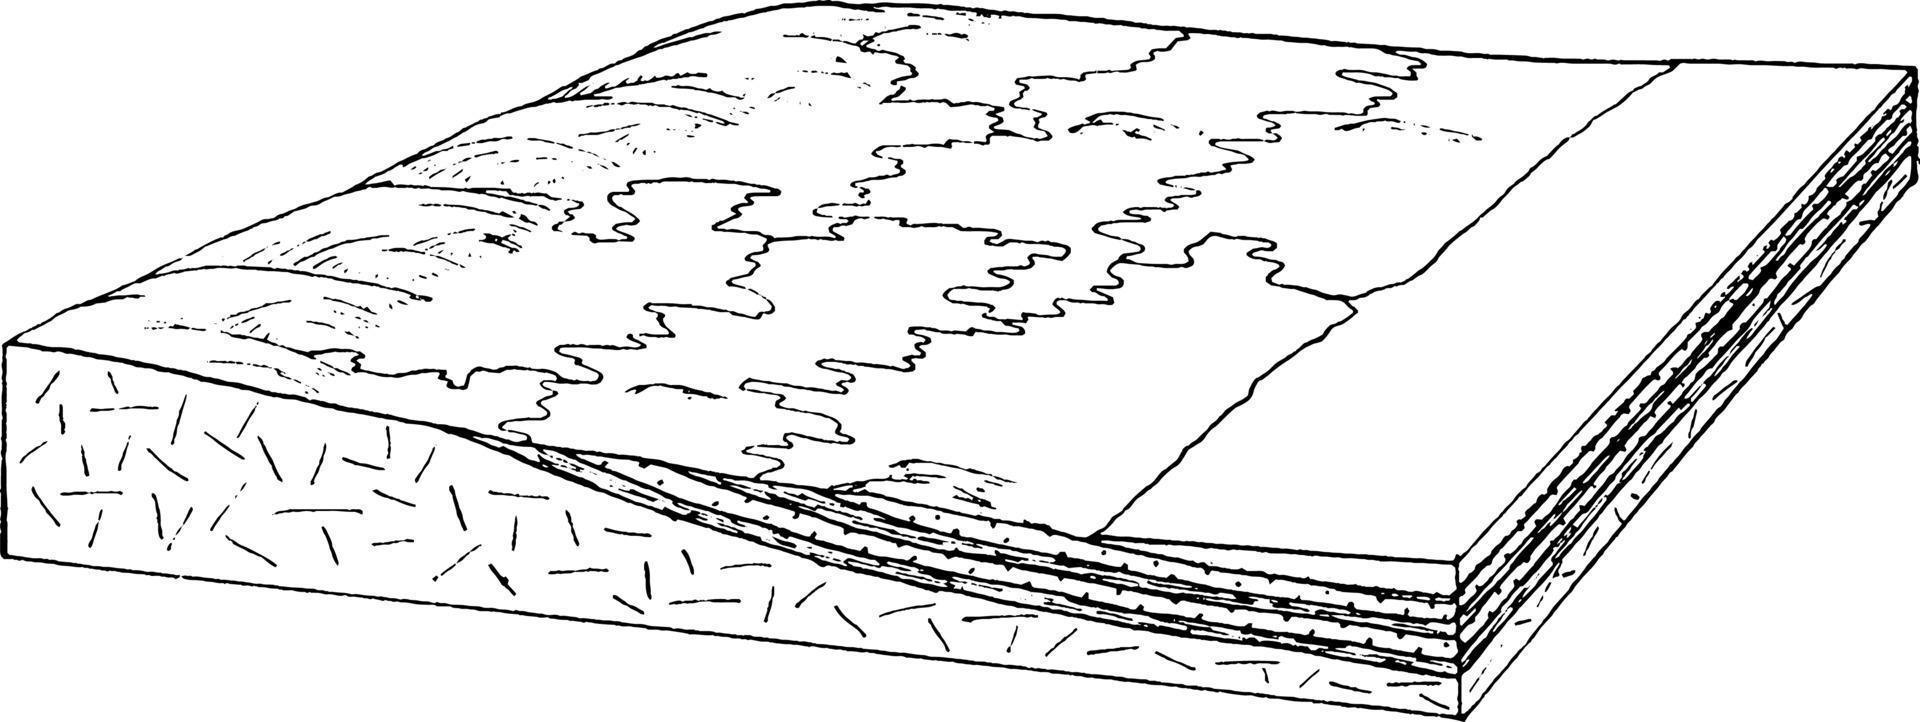 llanura costera después de la penetración, ilustración vintage. 13614096  Vector en Vecteezy